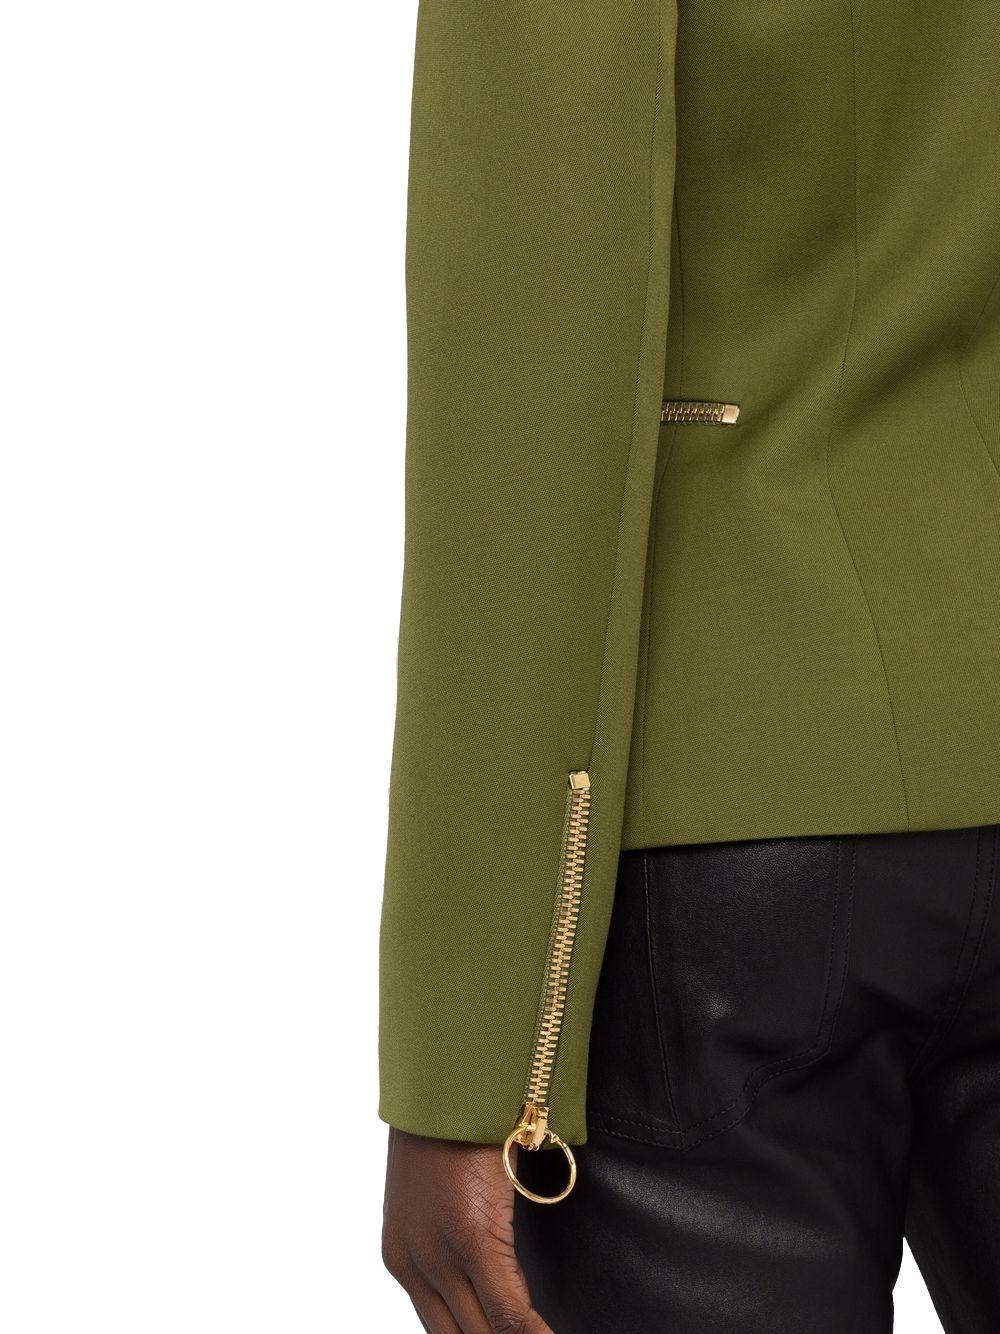 Balmain Jackets in Green - Save 65% | Lyst